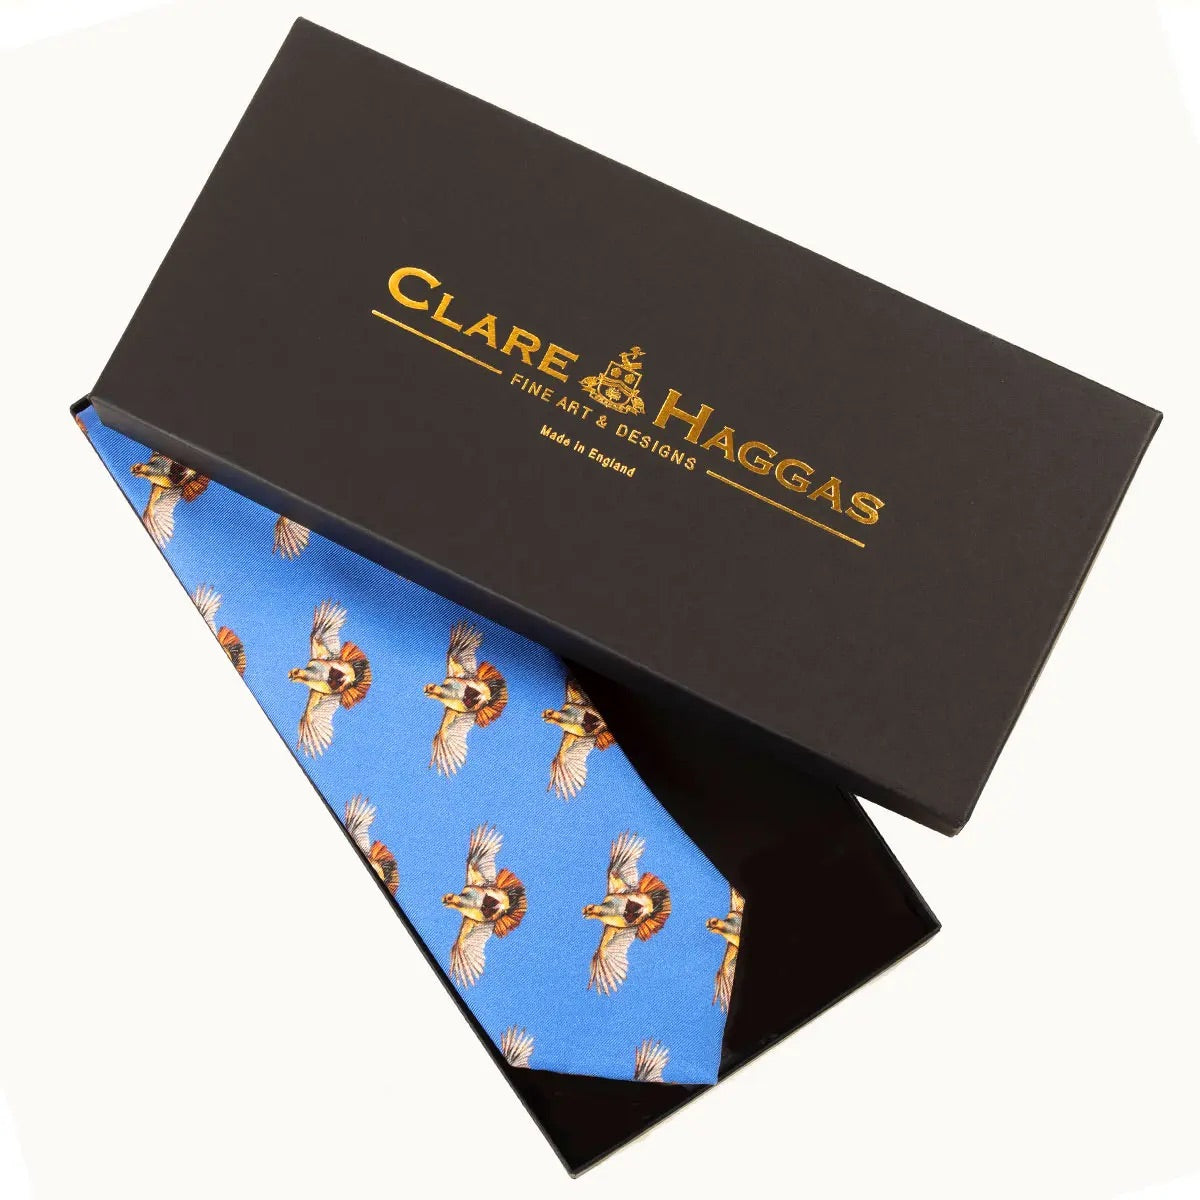 Clare Haggas Tie - High Flyer